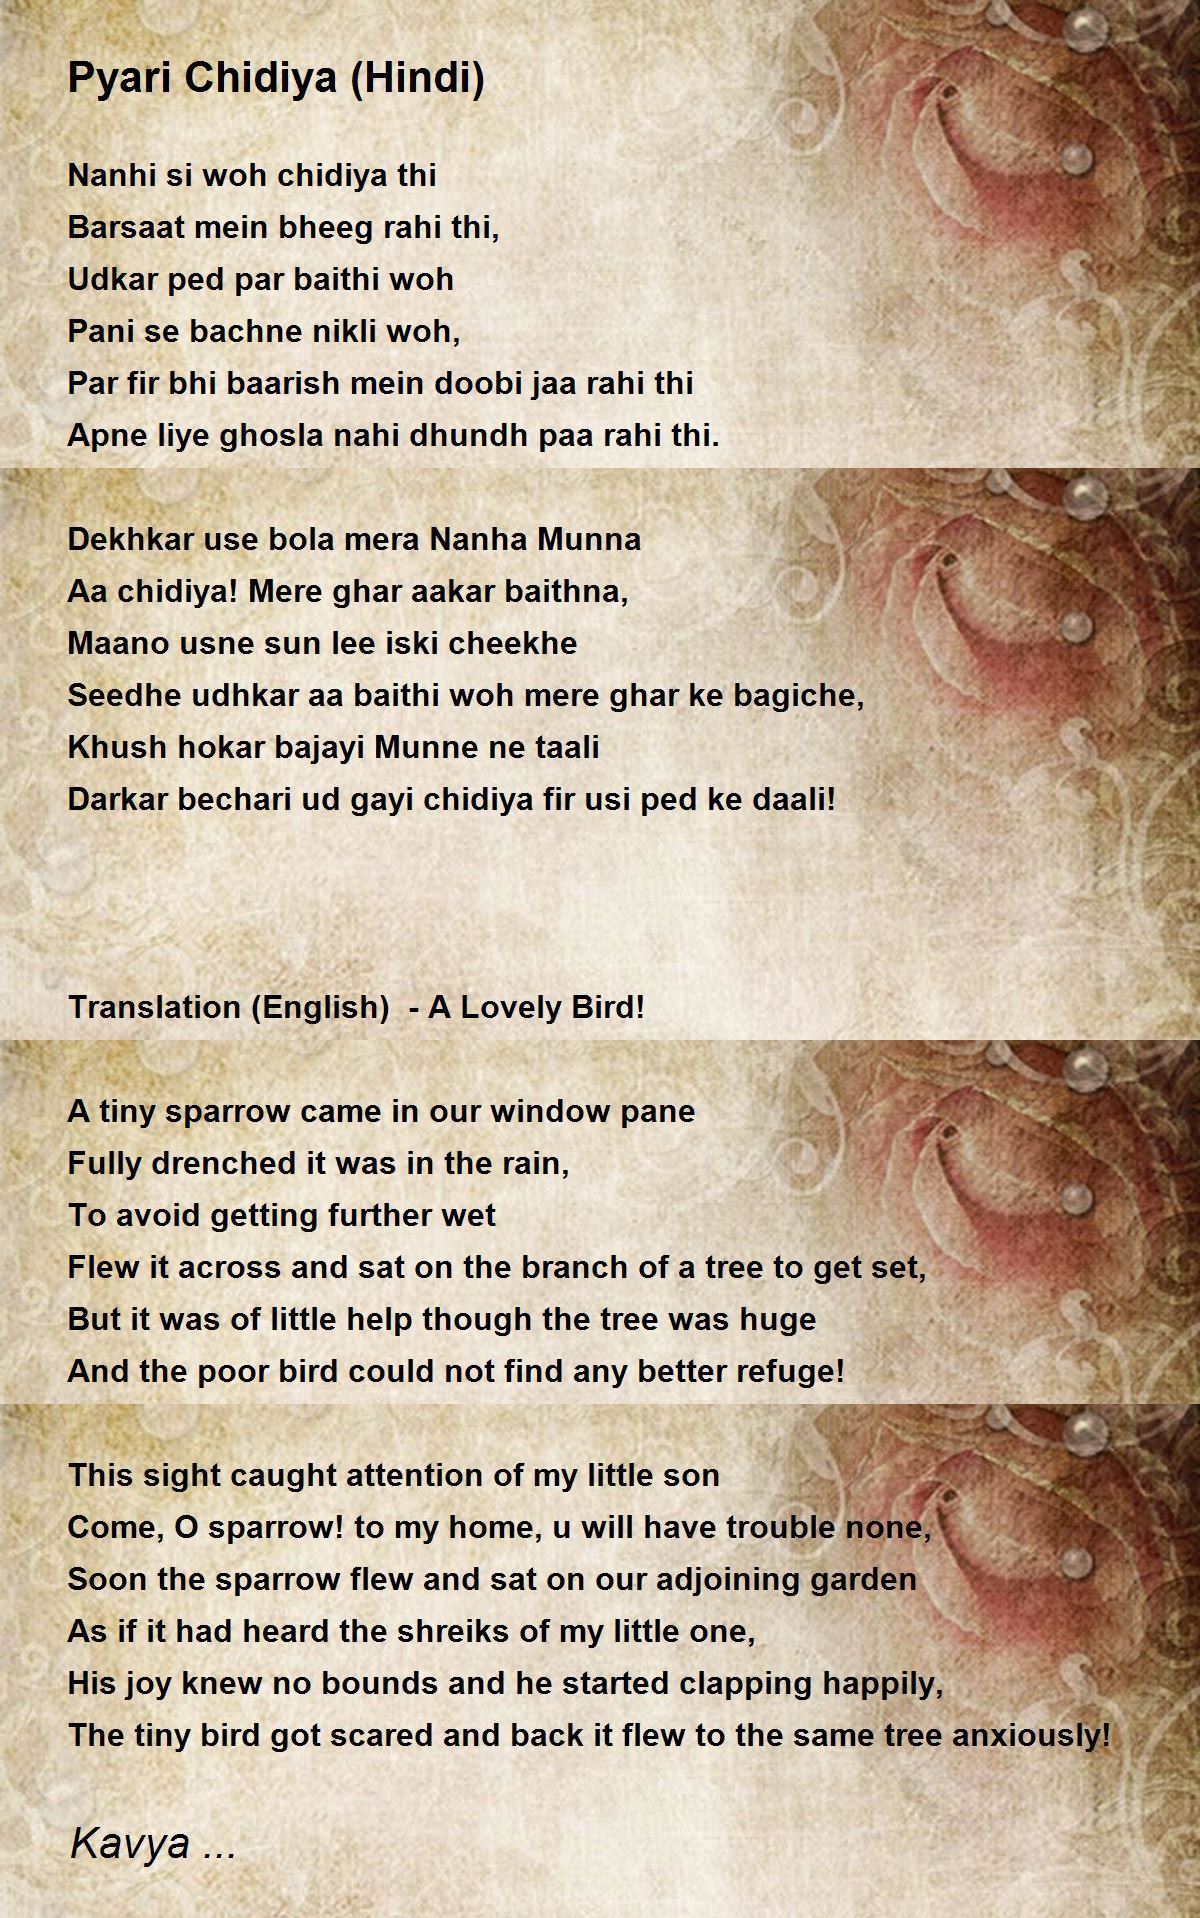 Pyari Chidiya (Hindi) Poem by Kavya - Poem Hunter